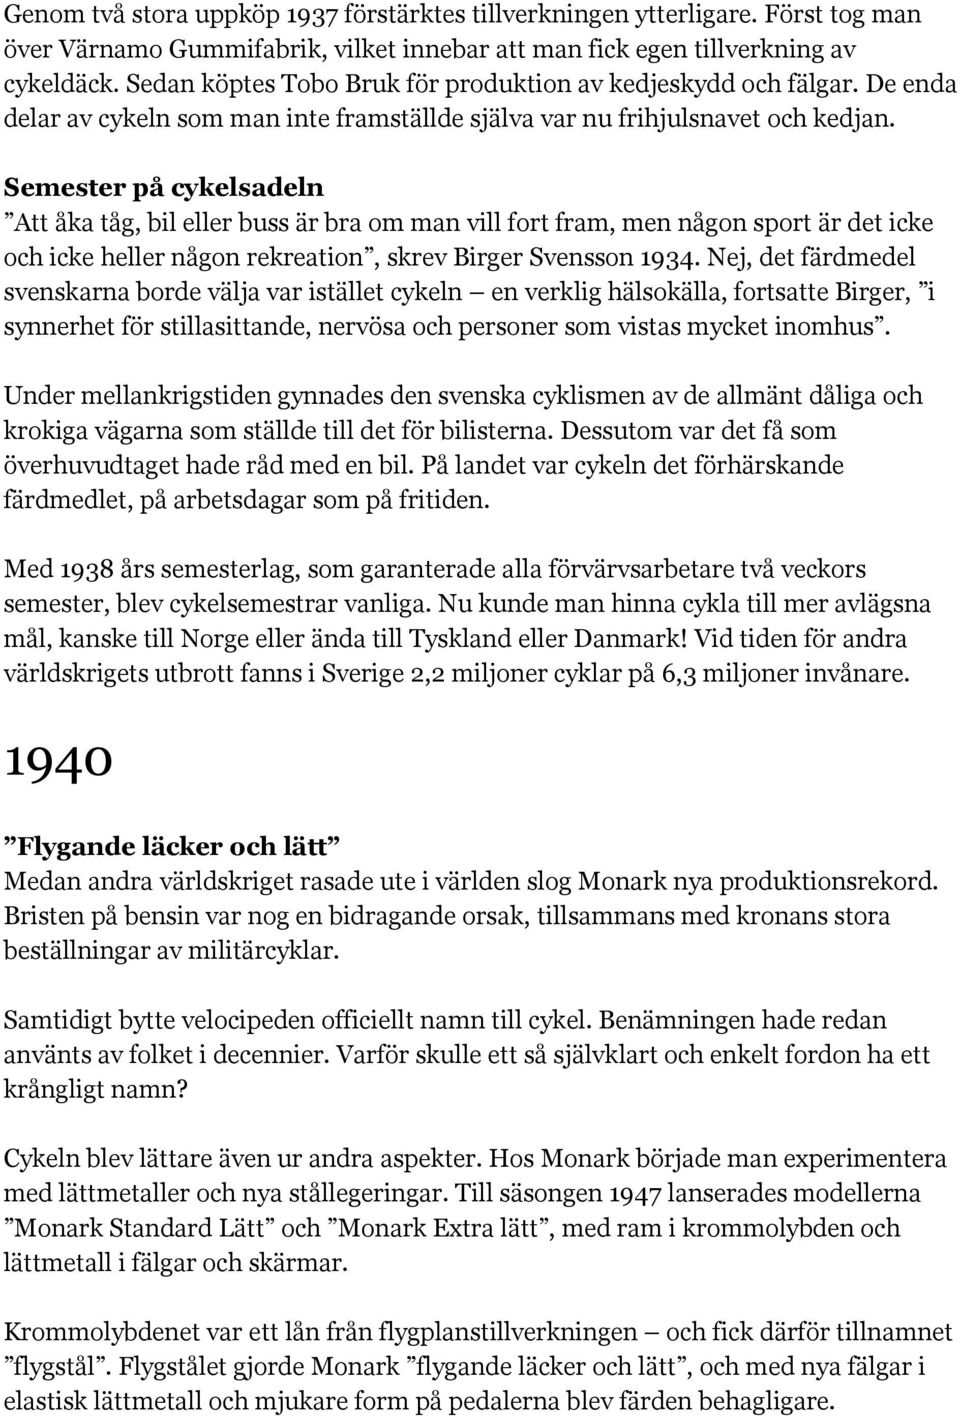 Semester på cykelsadeln Att åka tåg, bil eller buss är bra om man vill fort fram, men någon sport är det icke och icke heller någon rekreation, skrev Birger Svensson 1934.